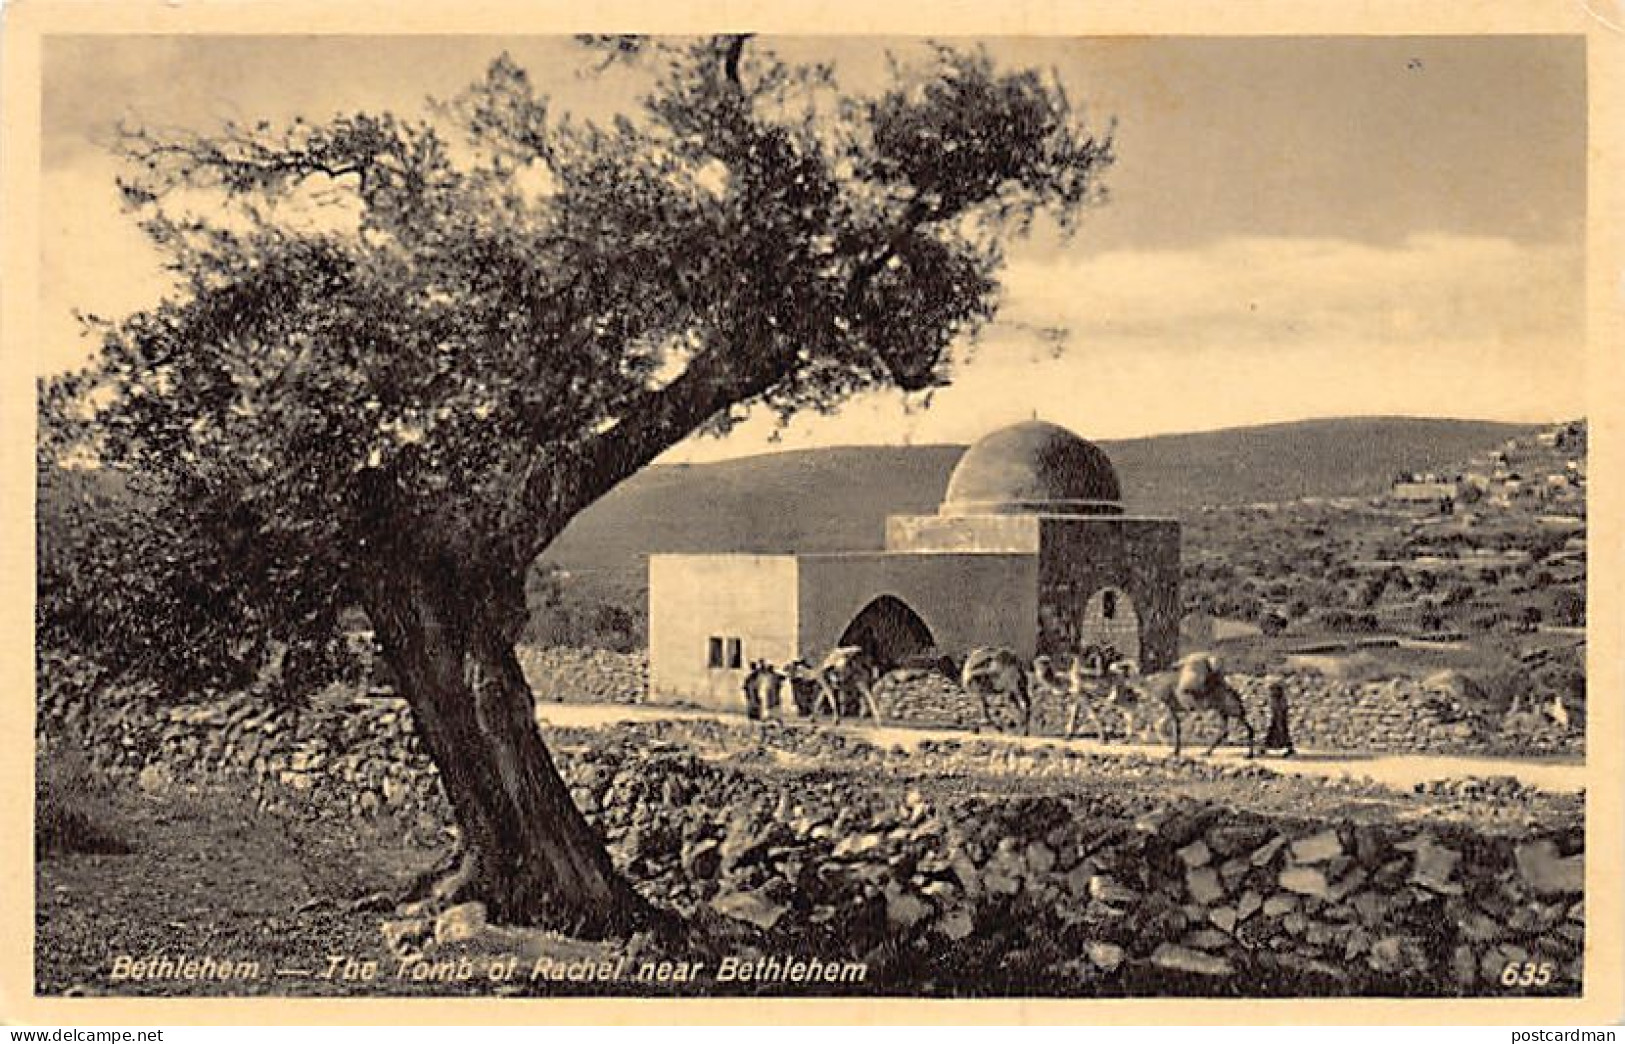 Palestine - BETHLEHEM - The Tomb Of Rachel - Publ. The Oriental Commercial Bureau 635 - Palestine